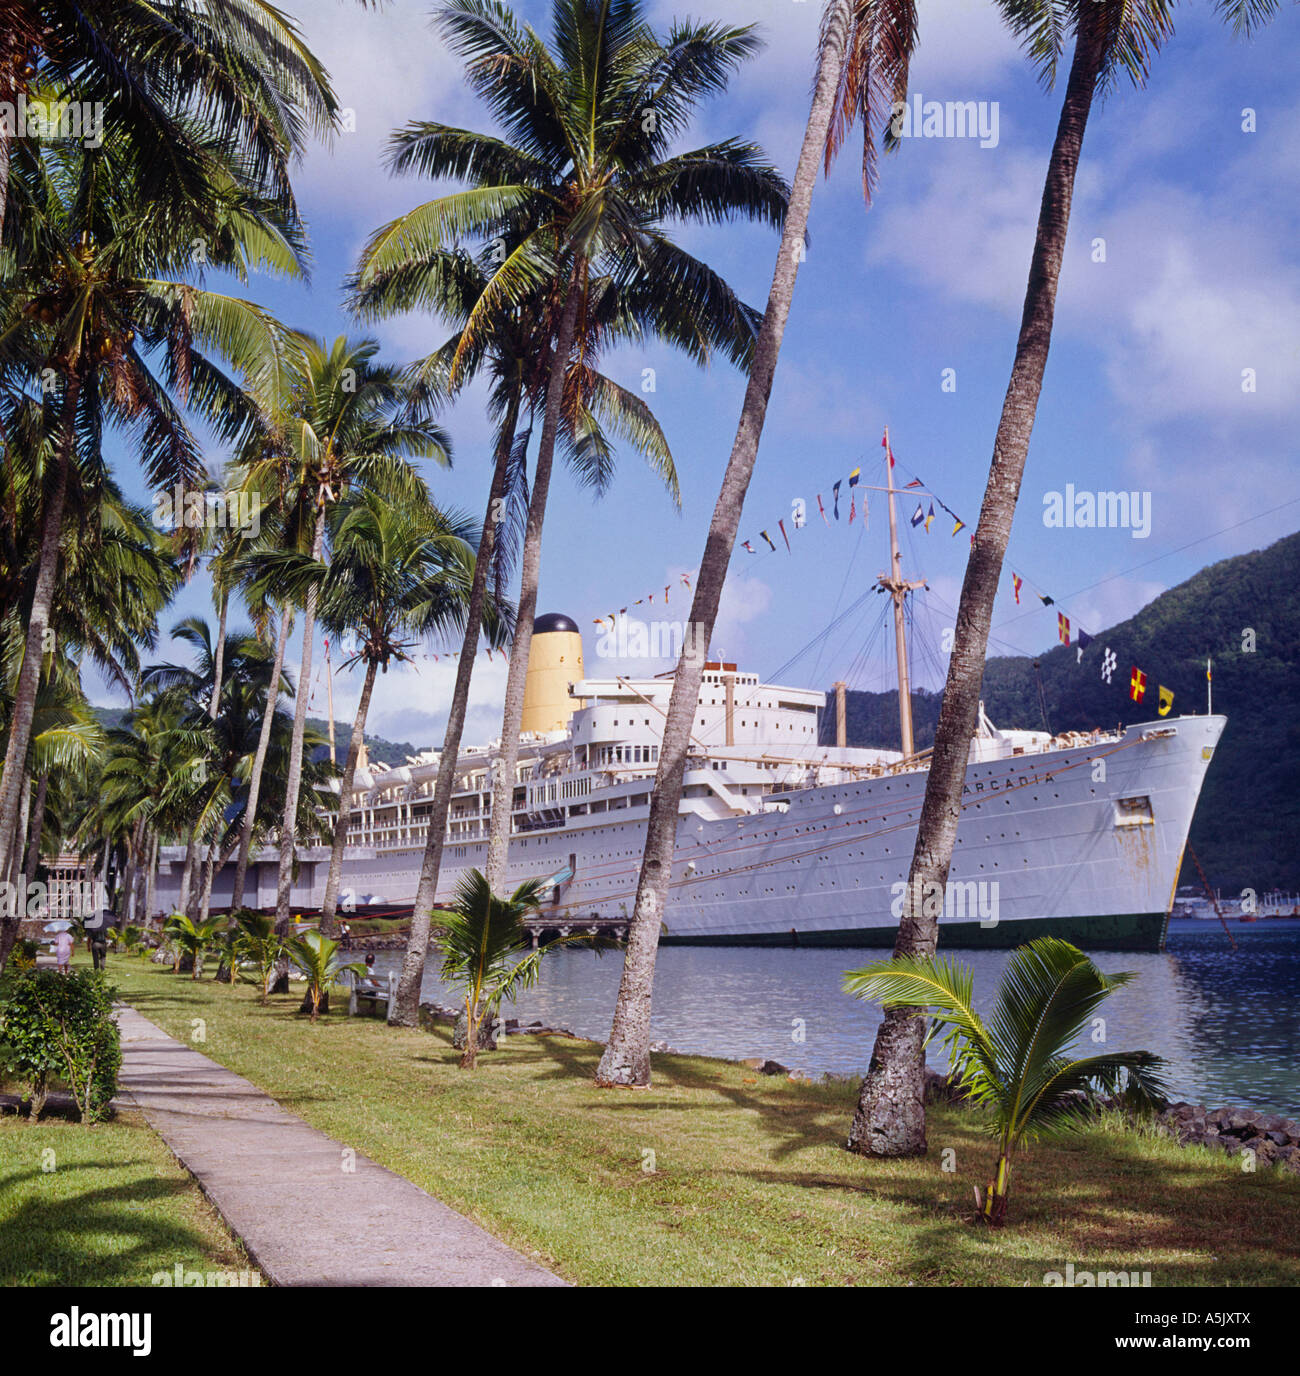 Die alte P & O Liner ss vertäut Arcadia im Hafen von Pago Pago im Jahr 1966 auf Tutulia Insel Amerikanisch-Samoa Süd-Pazifik Stockfoto